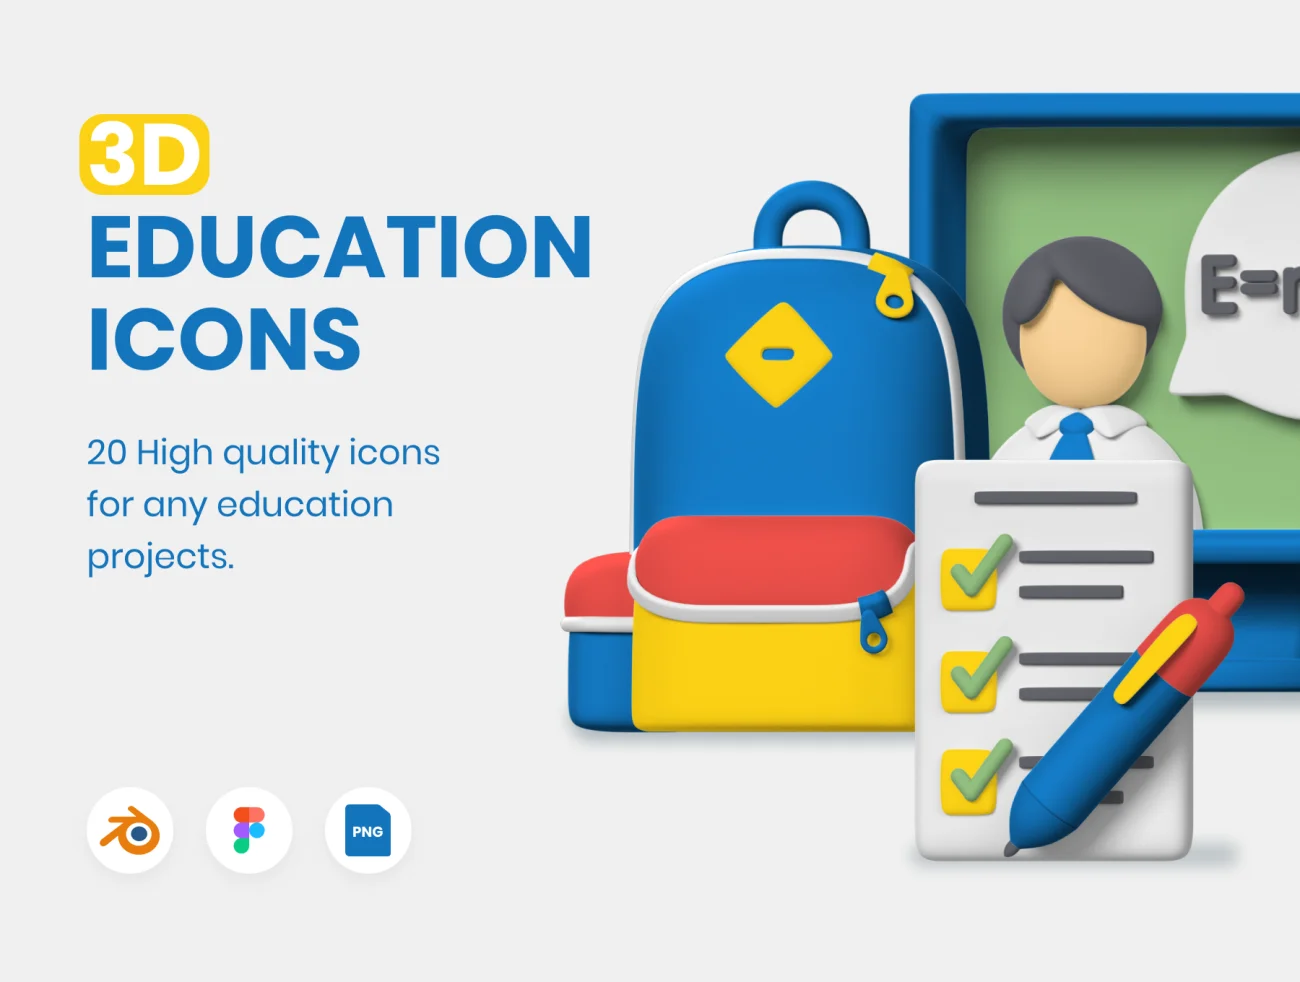 20款高质量在线教育3D图标合集 3D Education Icons插图1